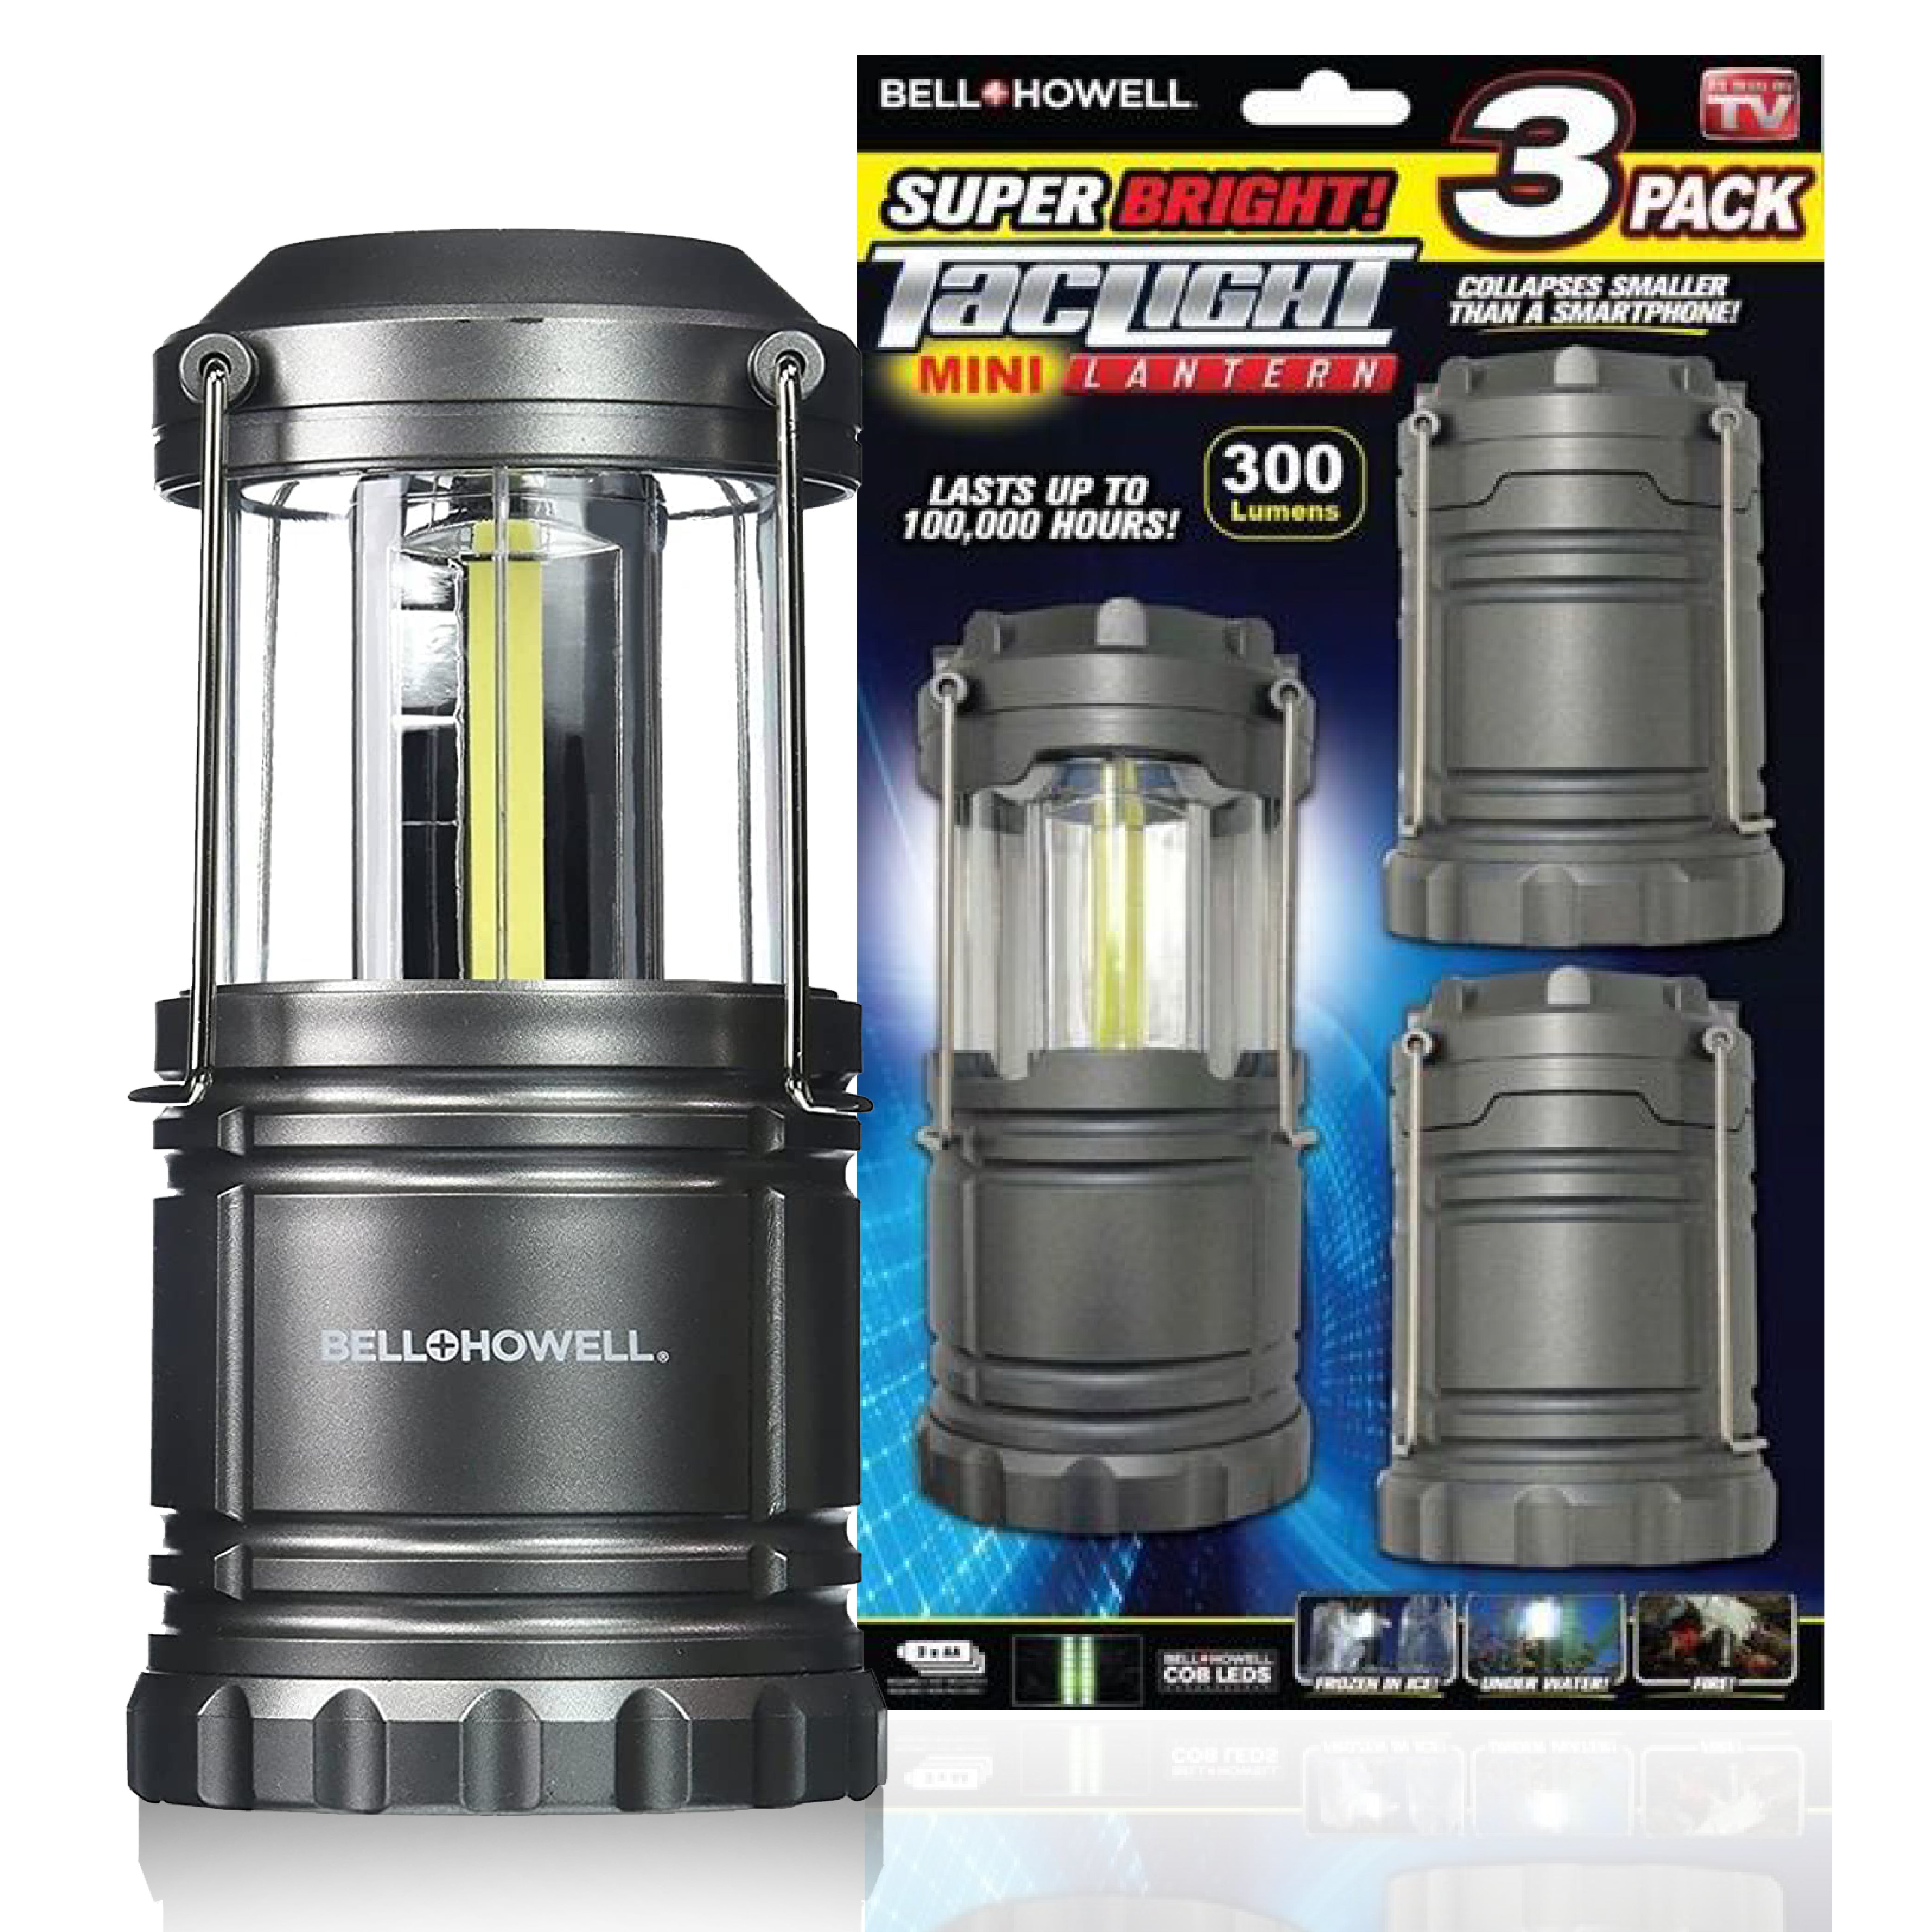 Bell + Howell Ultra Bright Taclight Mini Lanterns - 4 Pack, Black